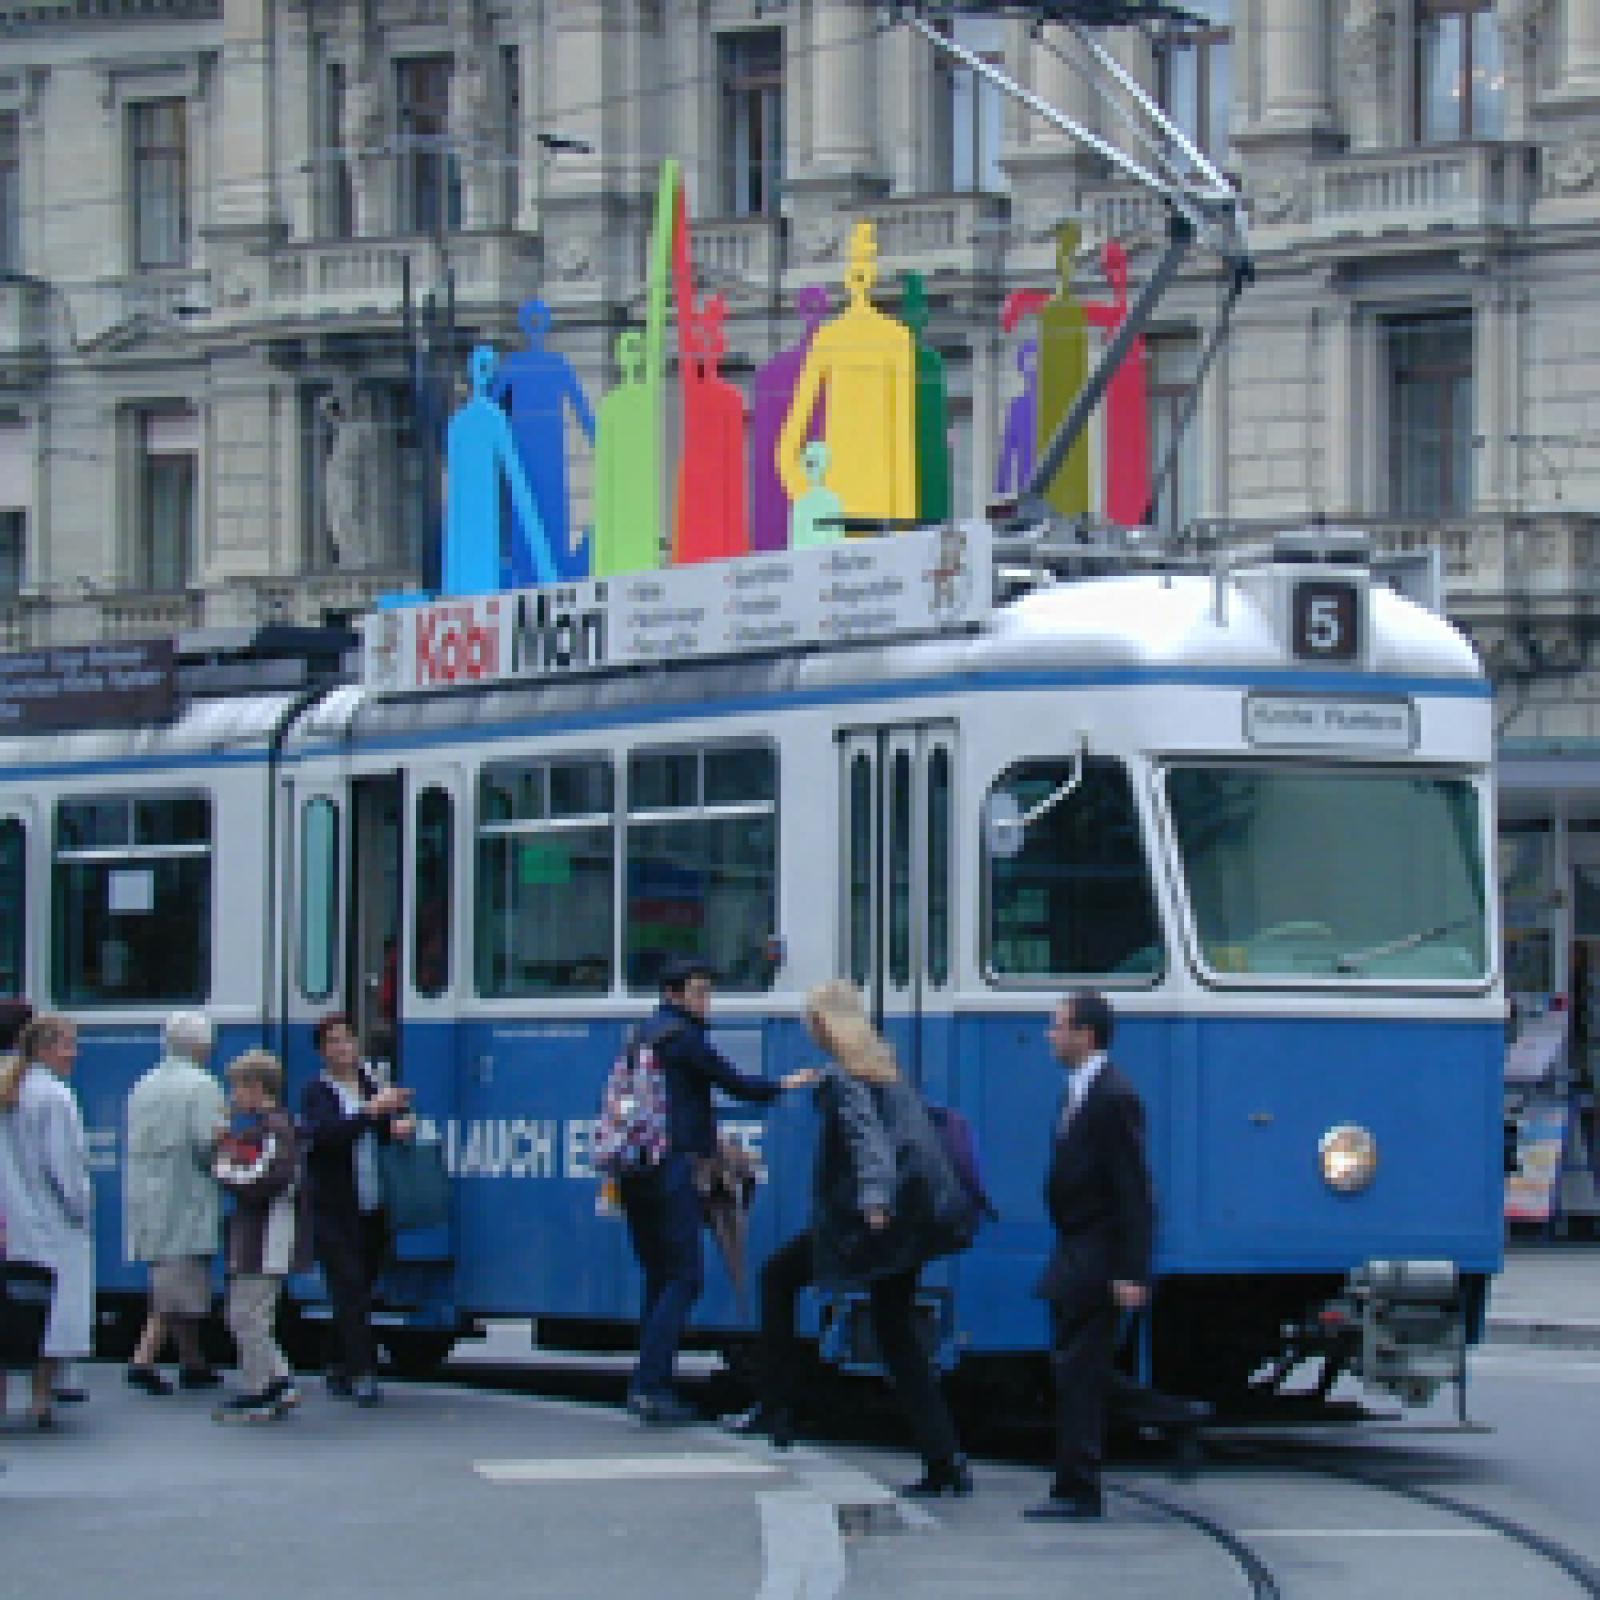 A tram in Zurich, Switzerland